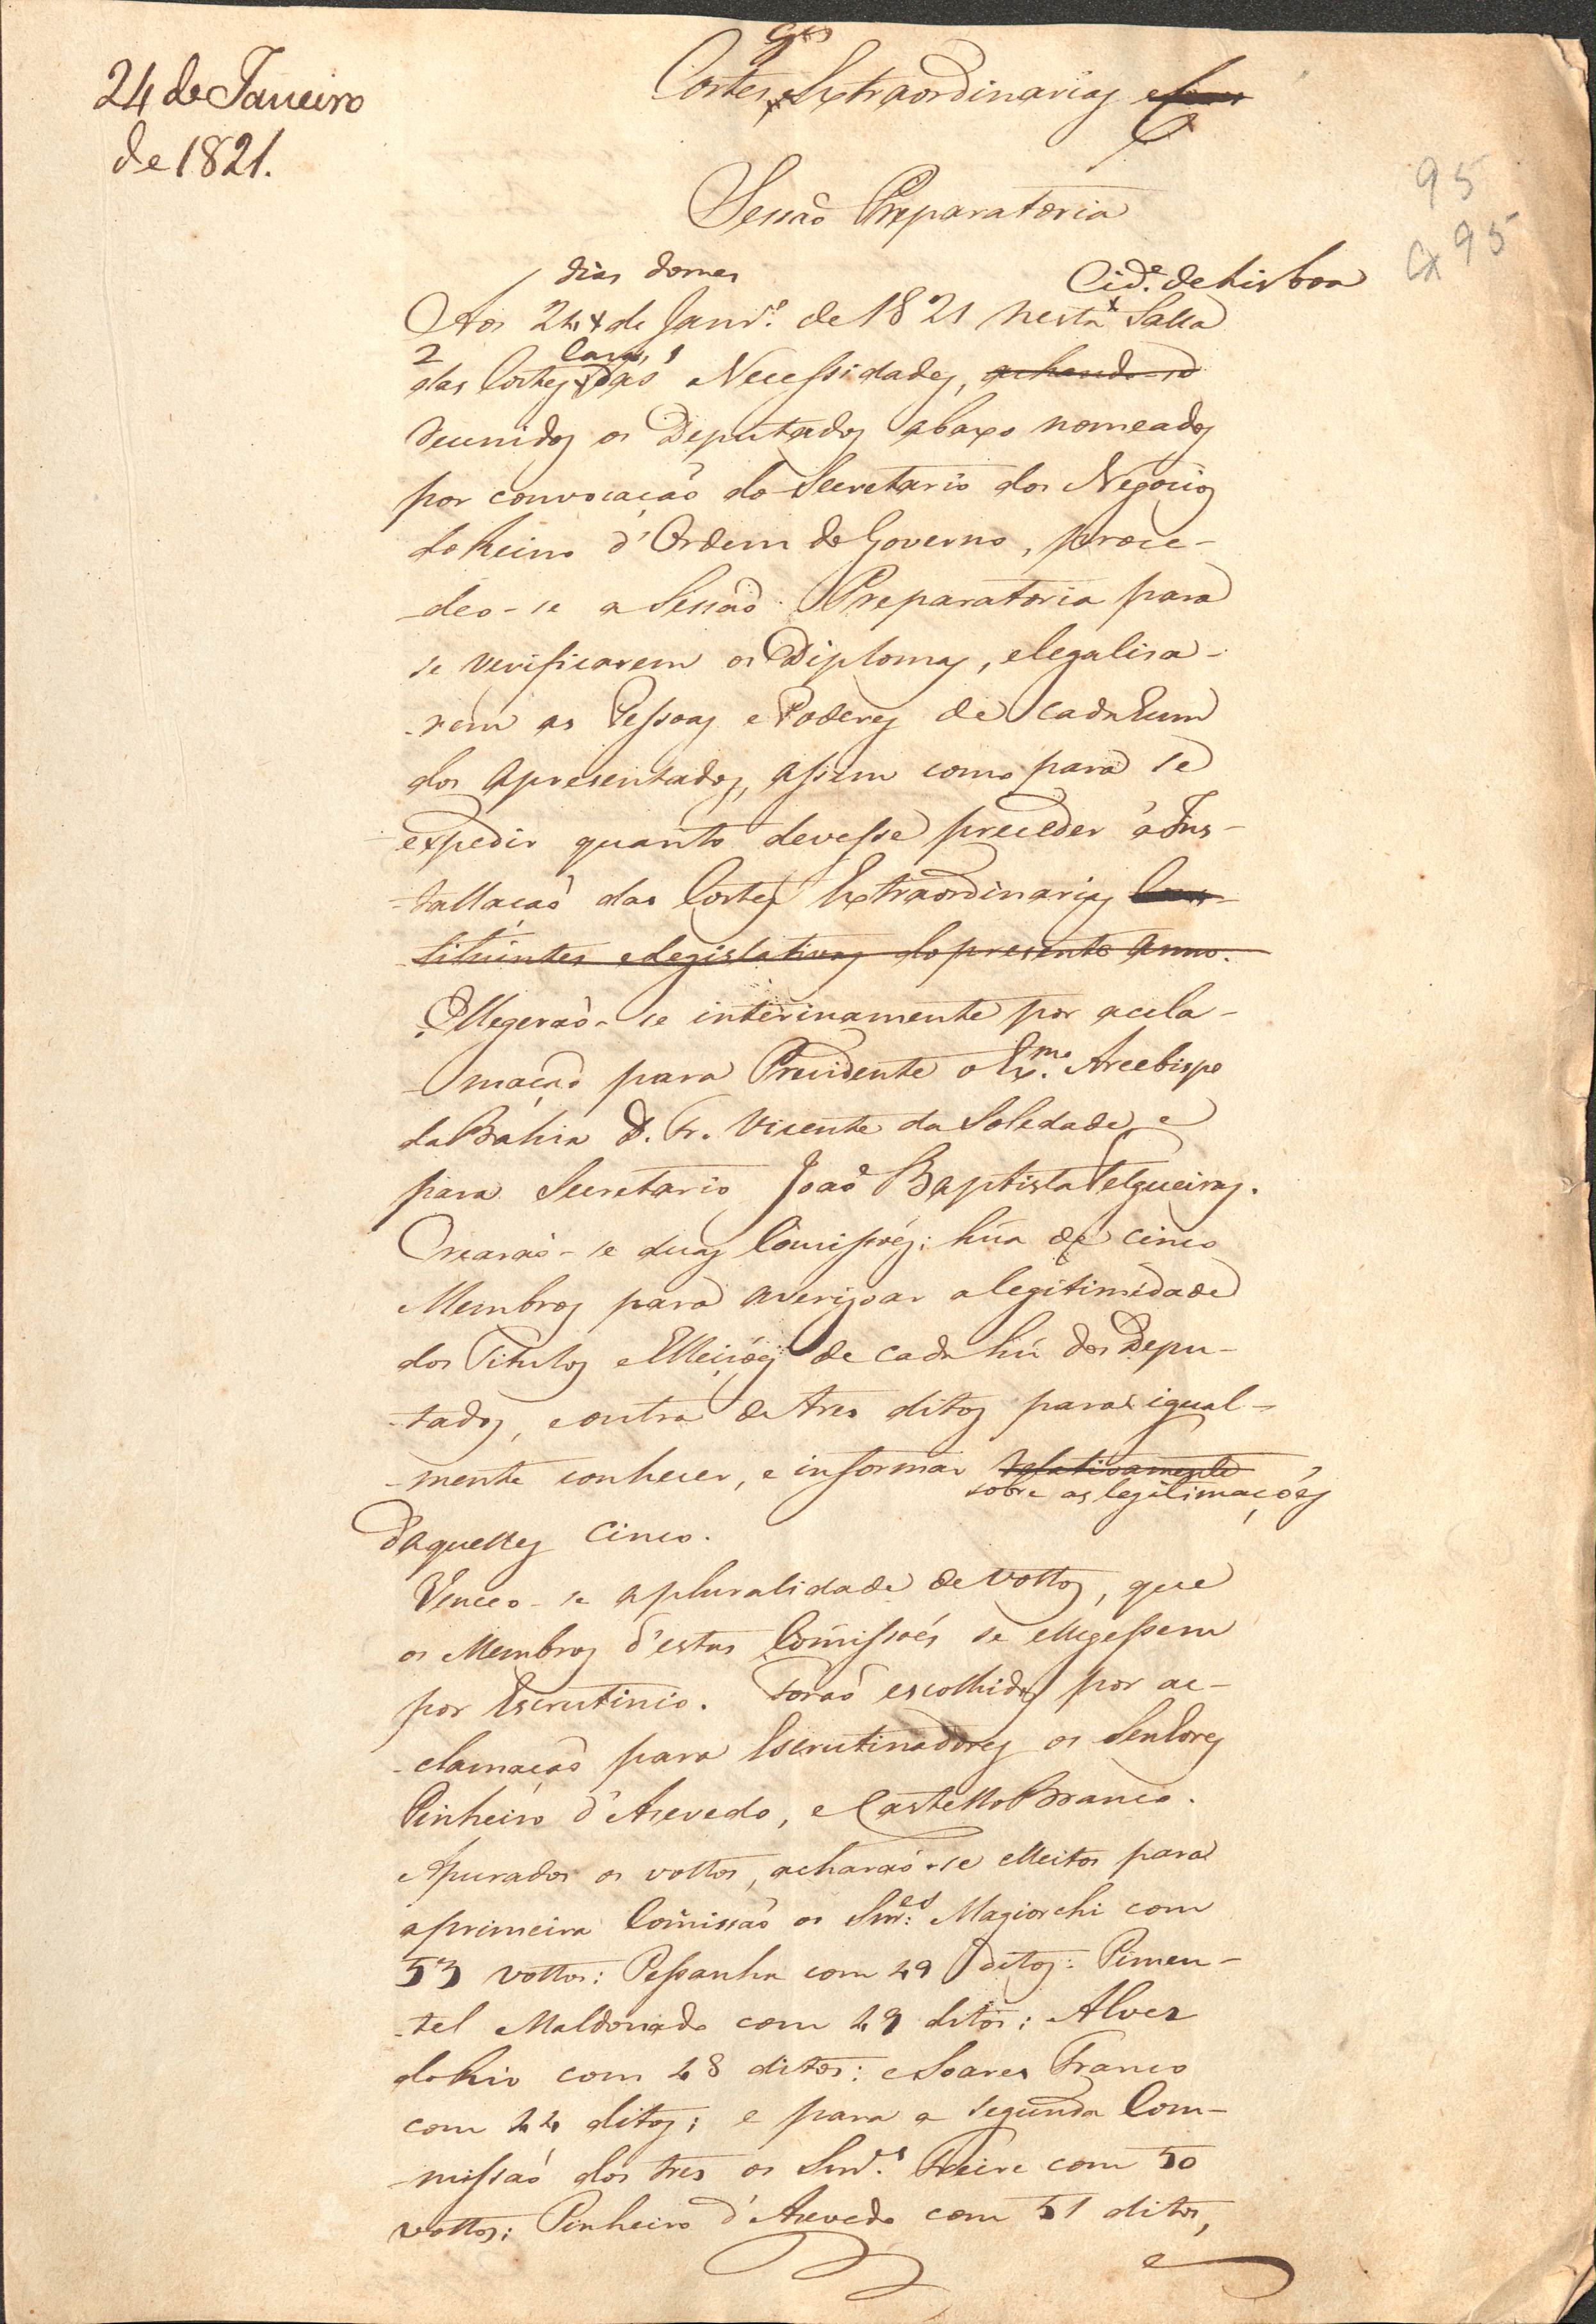 Ata manuscrita da sessão preparatória das Cortes Gerais Extraordinárias e Constituintes, reunidas a 24 de janeiro de 1821